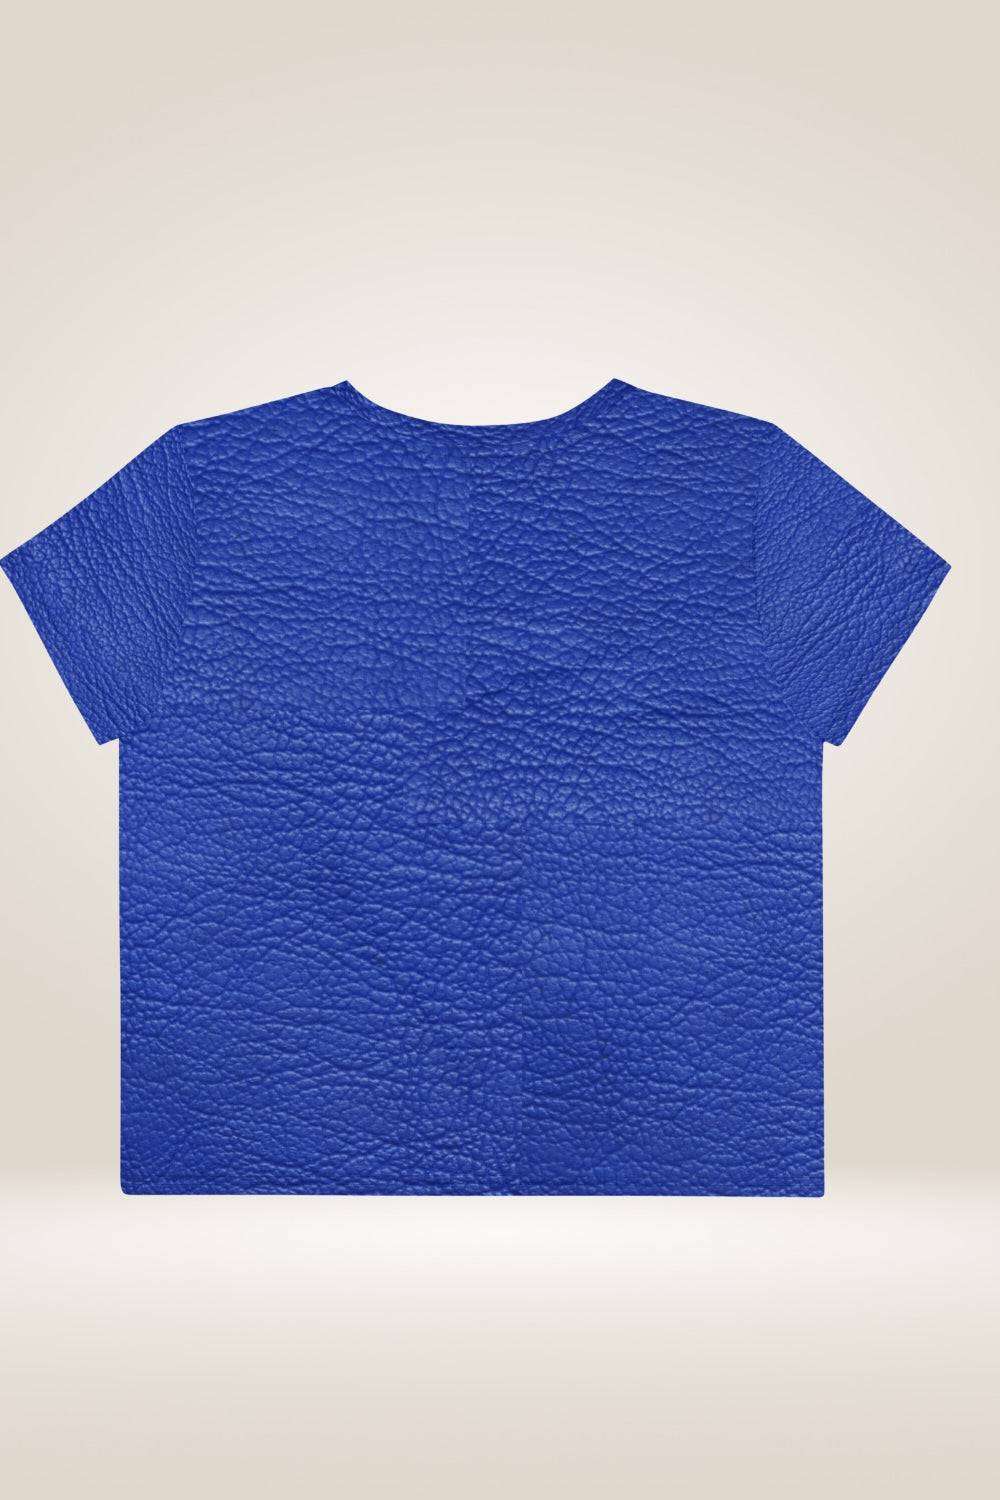 Leather Print Blue Crop Top - TGC Boutique - Crop Top